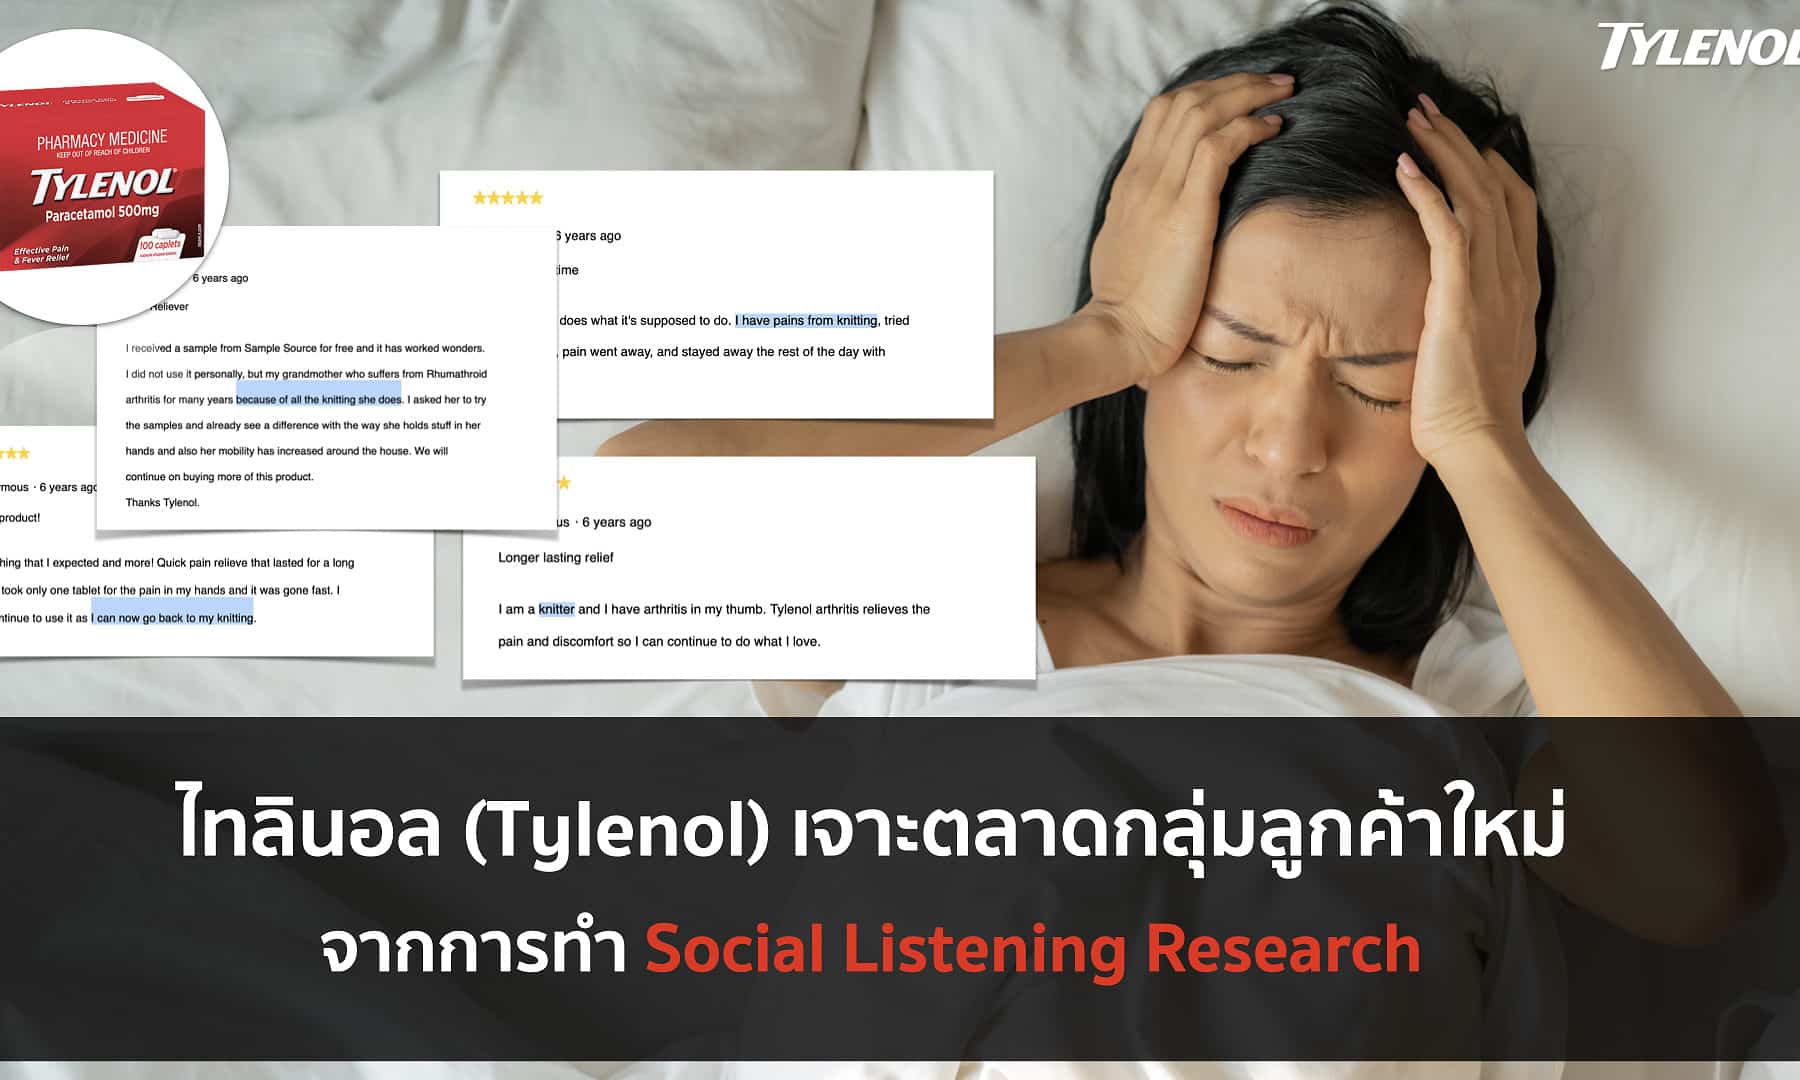 ไทลินอลเจาะกลุ่มลูกค้าใหม่จากการทำ Social Listening Research 